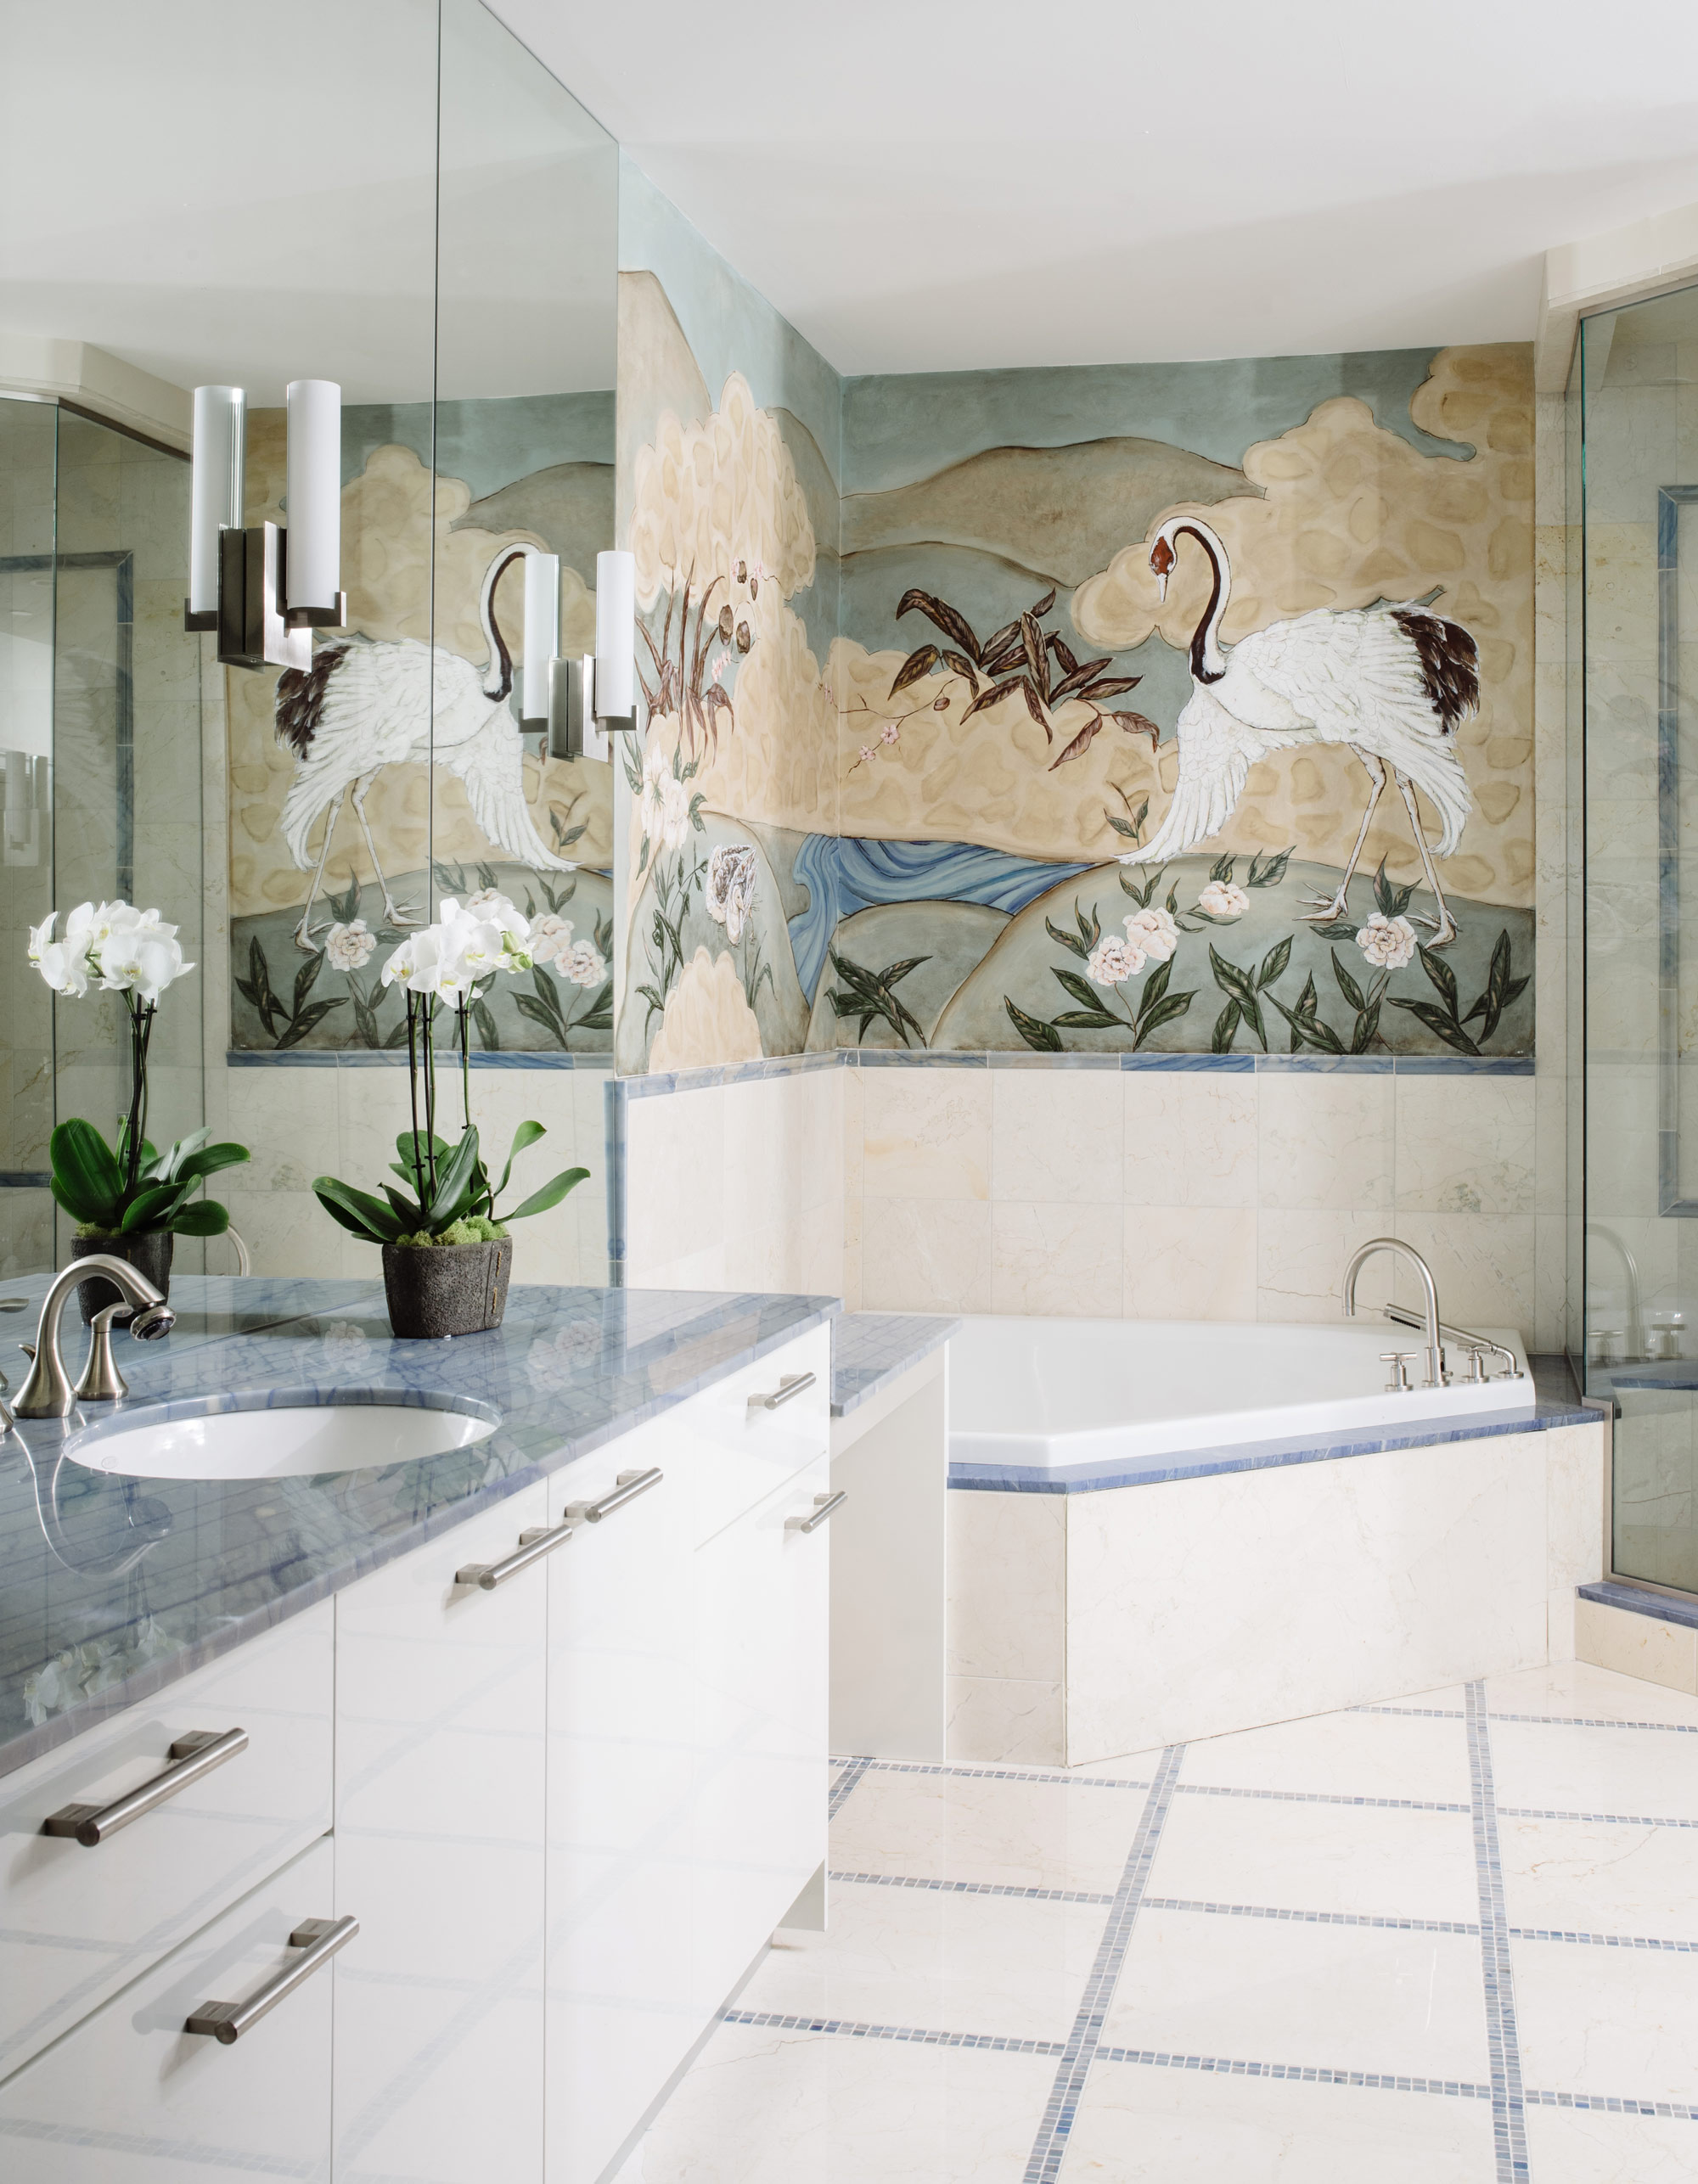 Victoria+Sanchez+Washington+Interior+Design+bathroom.jpg